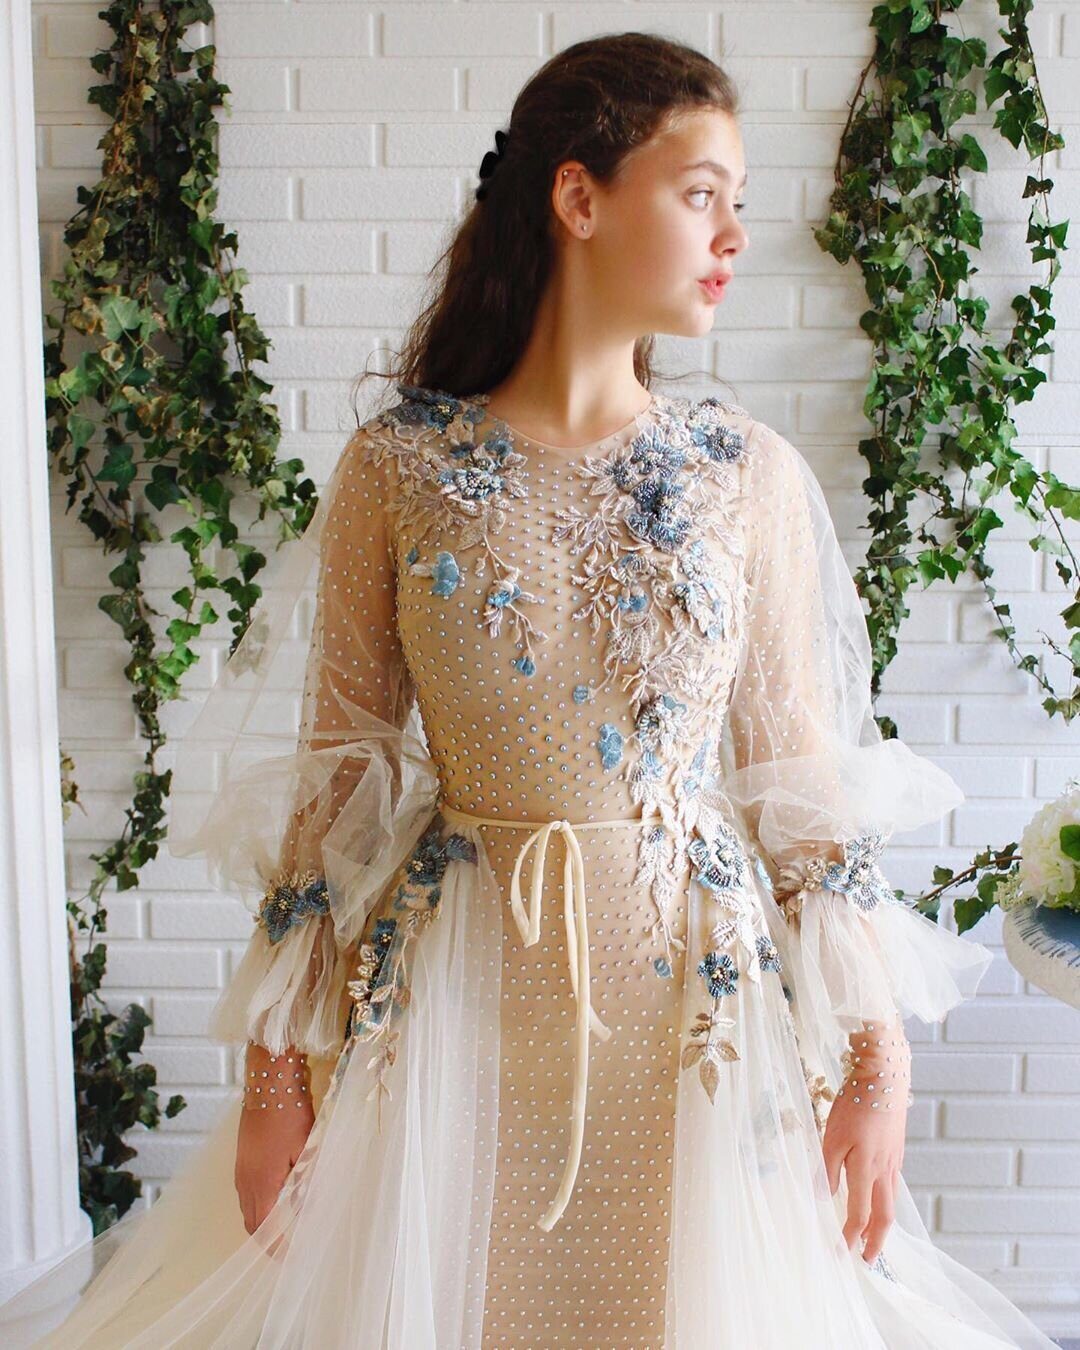 Просто сказочные, шикарные платья турецкого дизайнера Teuta Matoshi Duriqi 😍 Как вам?